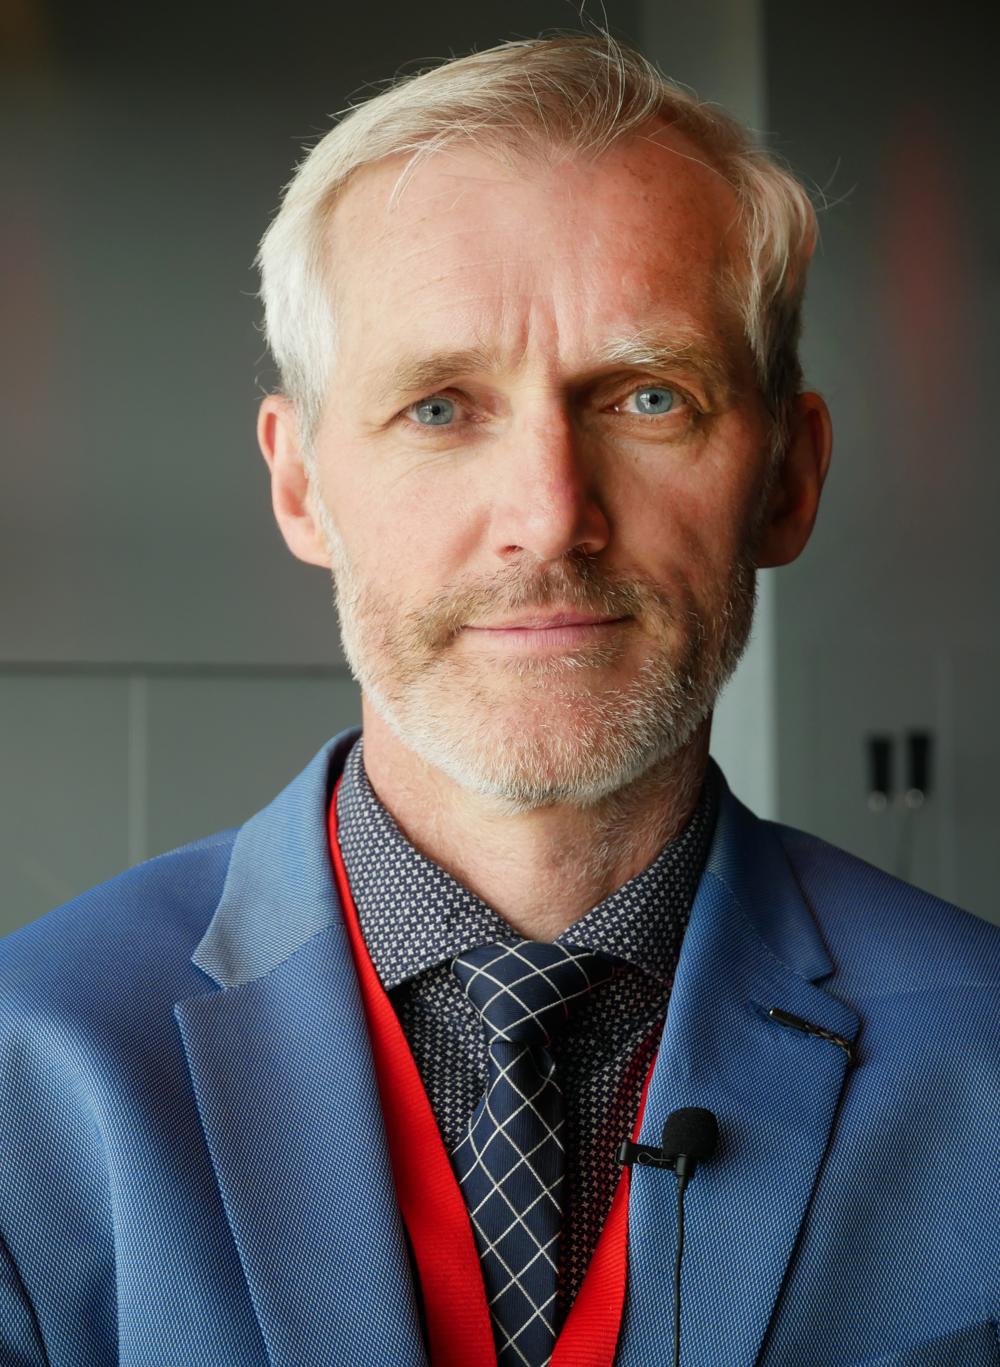 – Med fortsatta tester vill vi bidra till utvecklingen av säkrare lastbilar, säger Rikard Fredriksson.